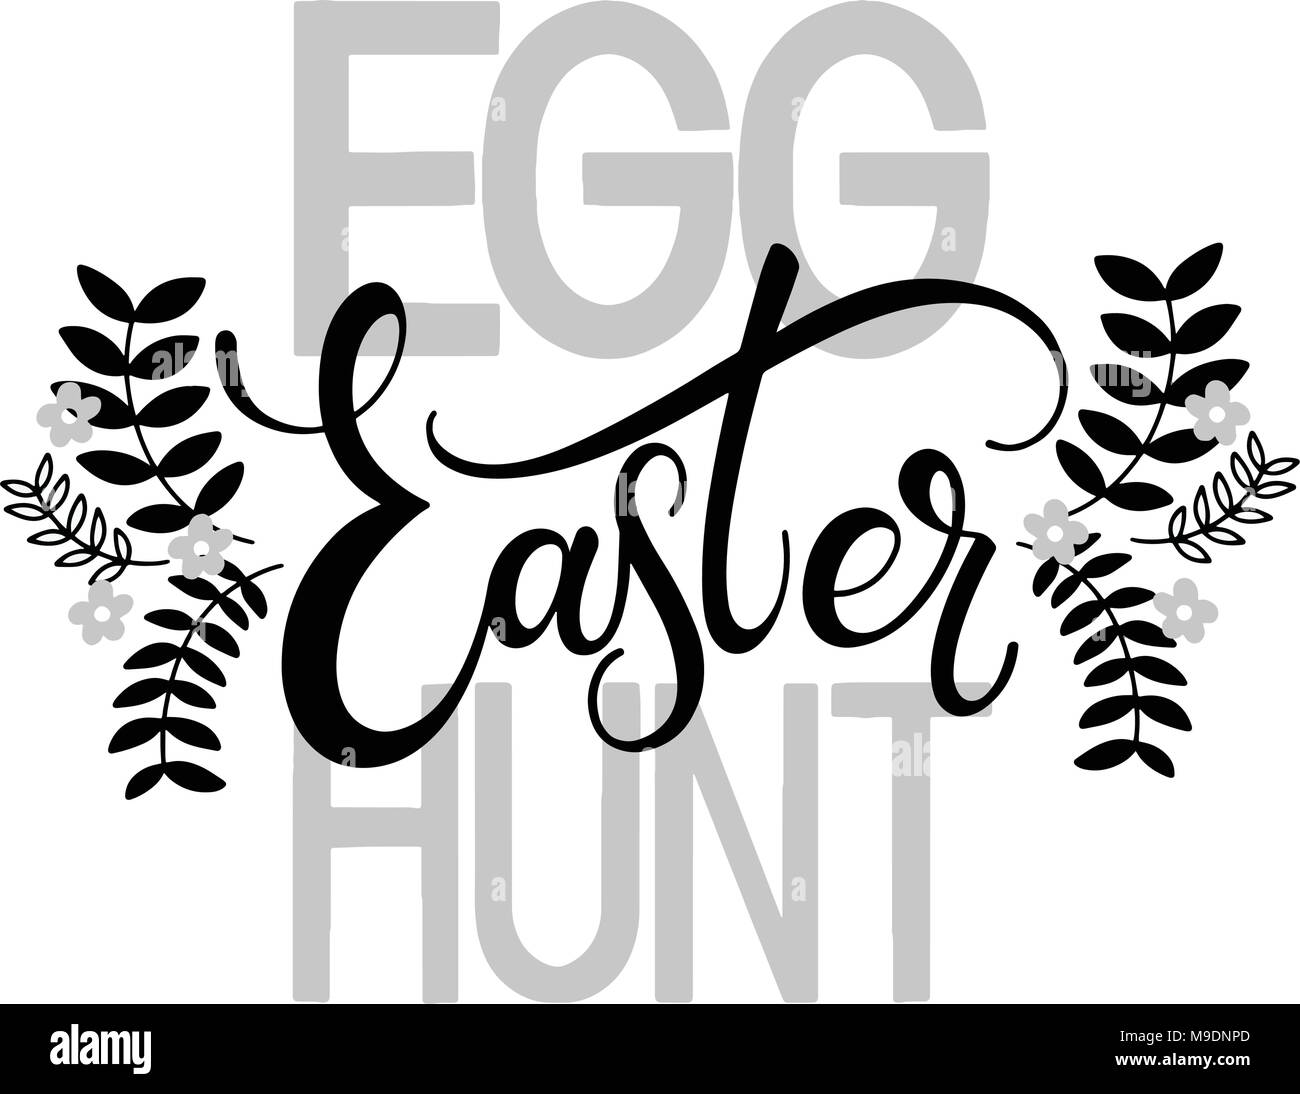 easter egg hunt clipart black and white